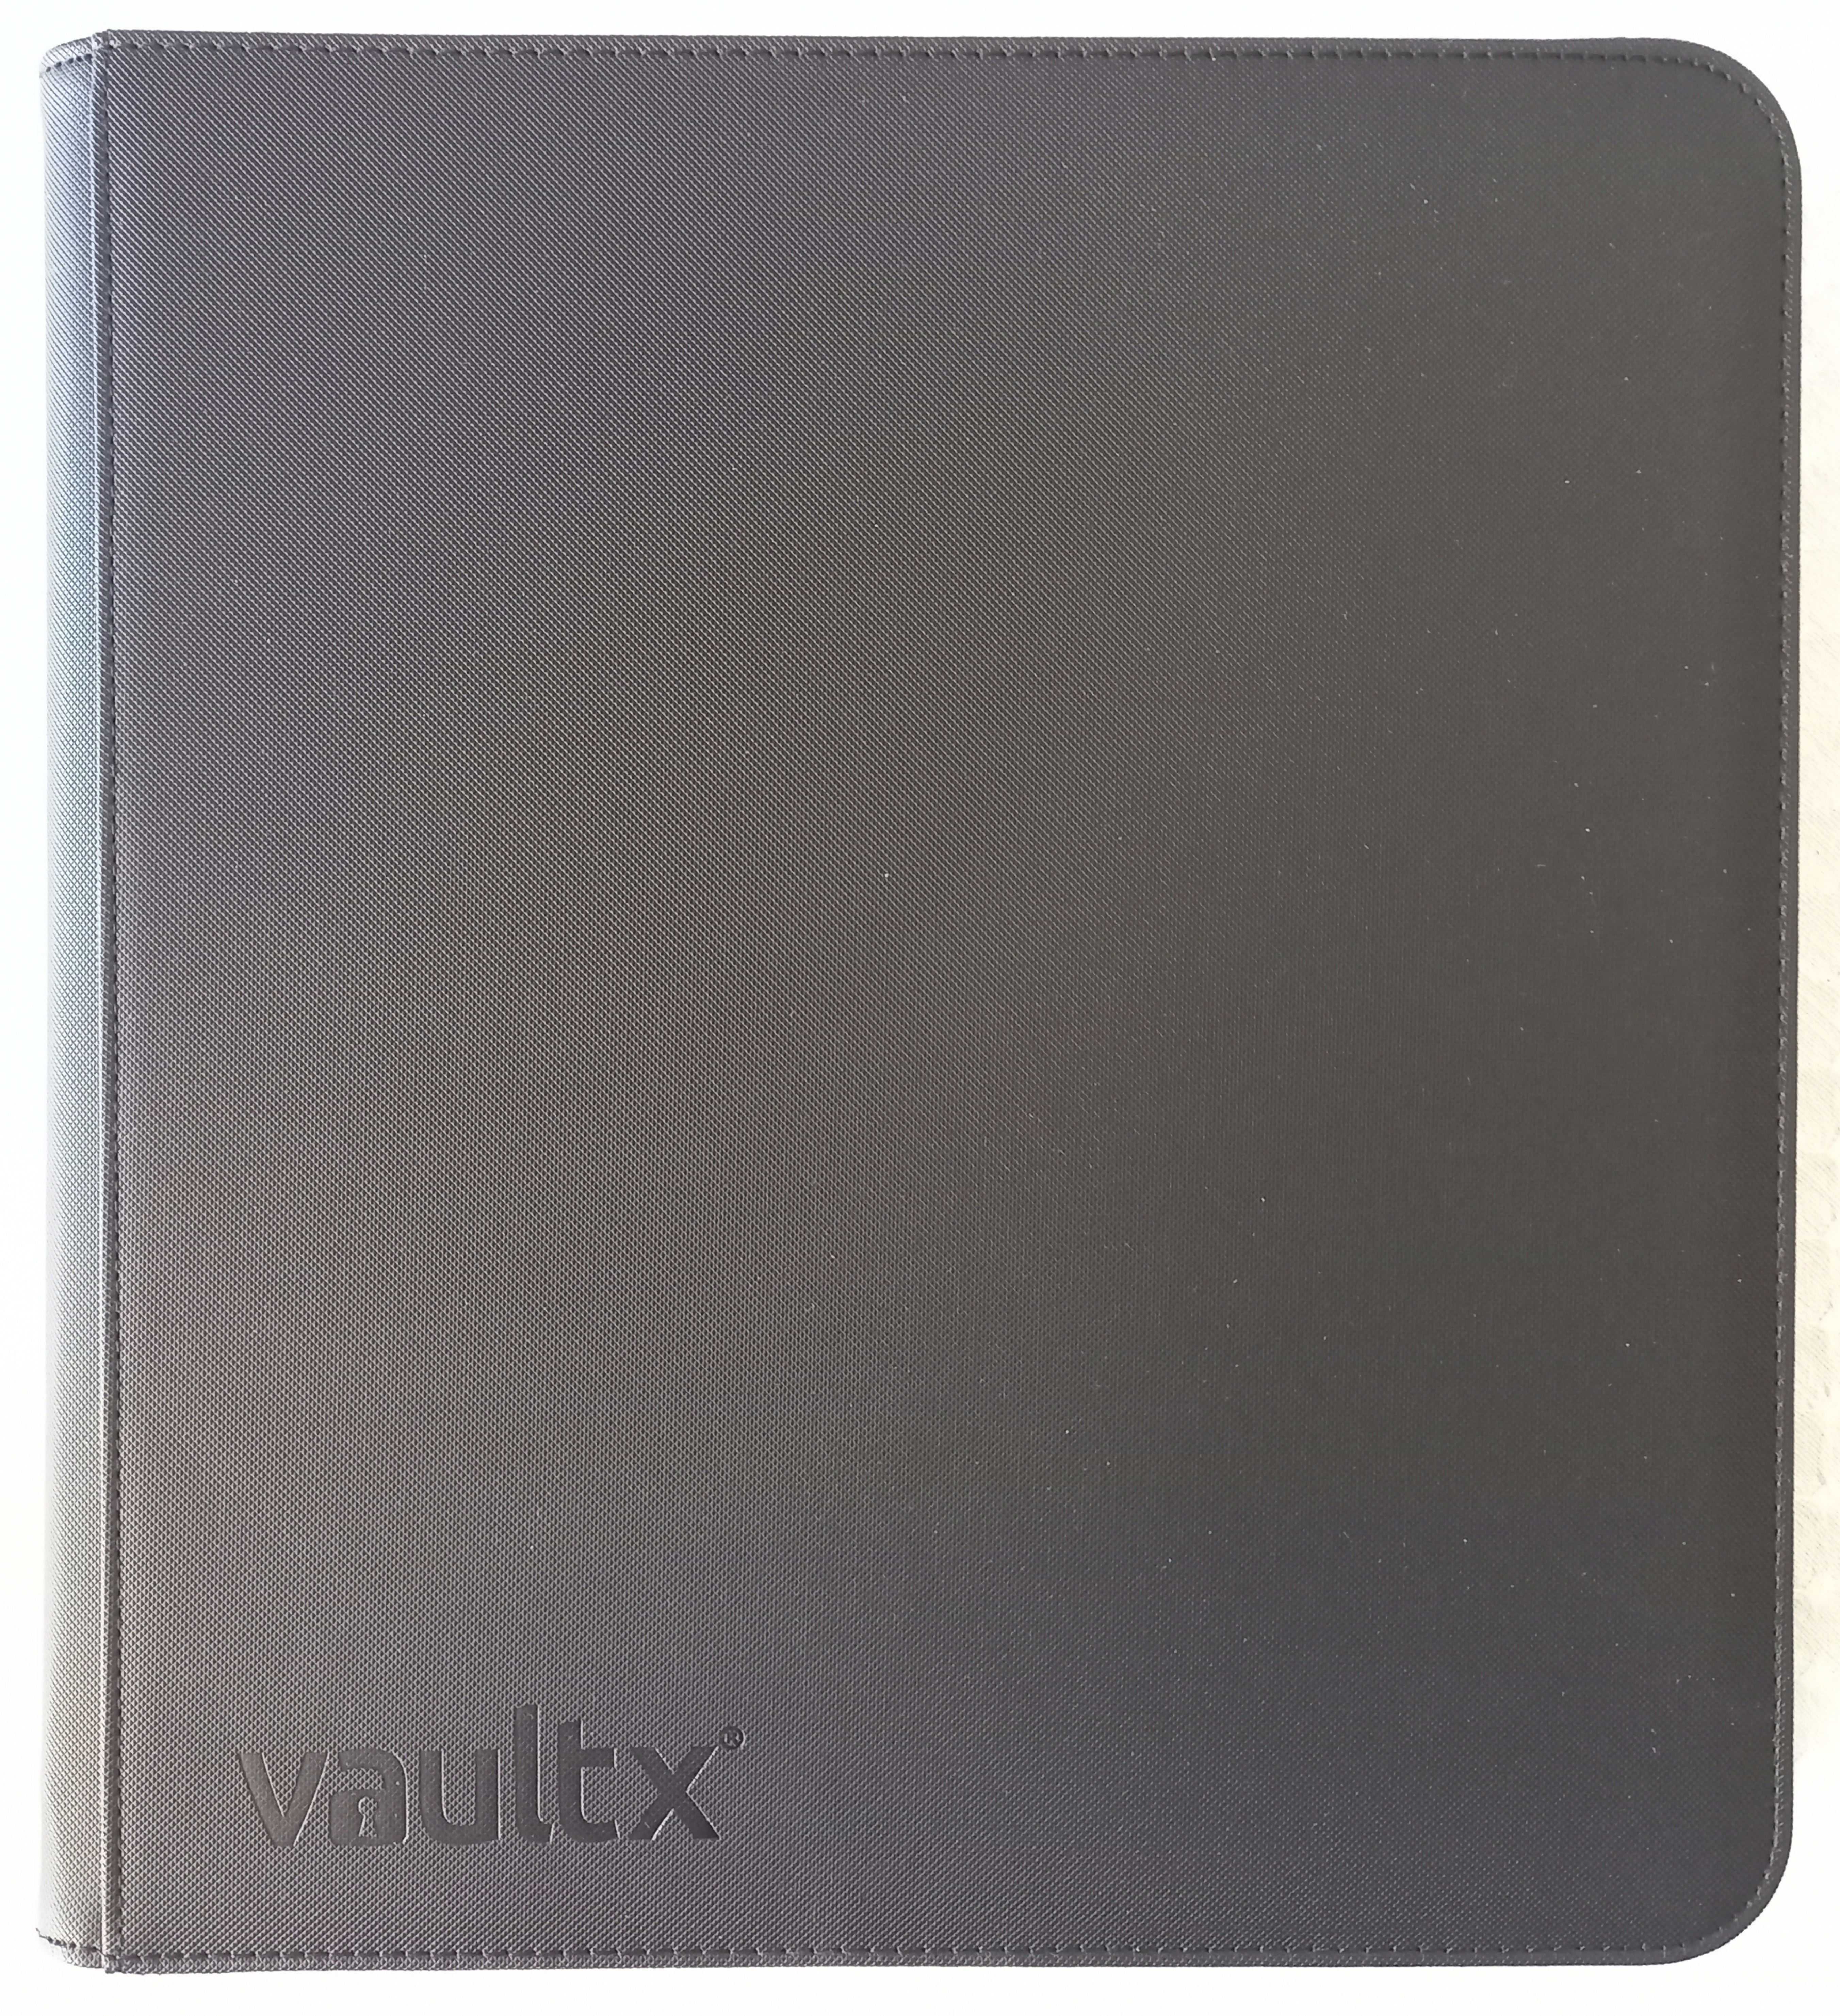 Vault X 12-Pocket Exo-Tec Zip Binder Front View